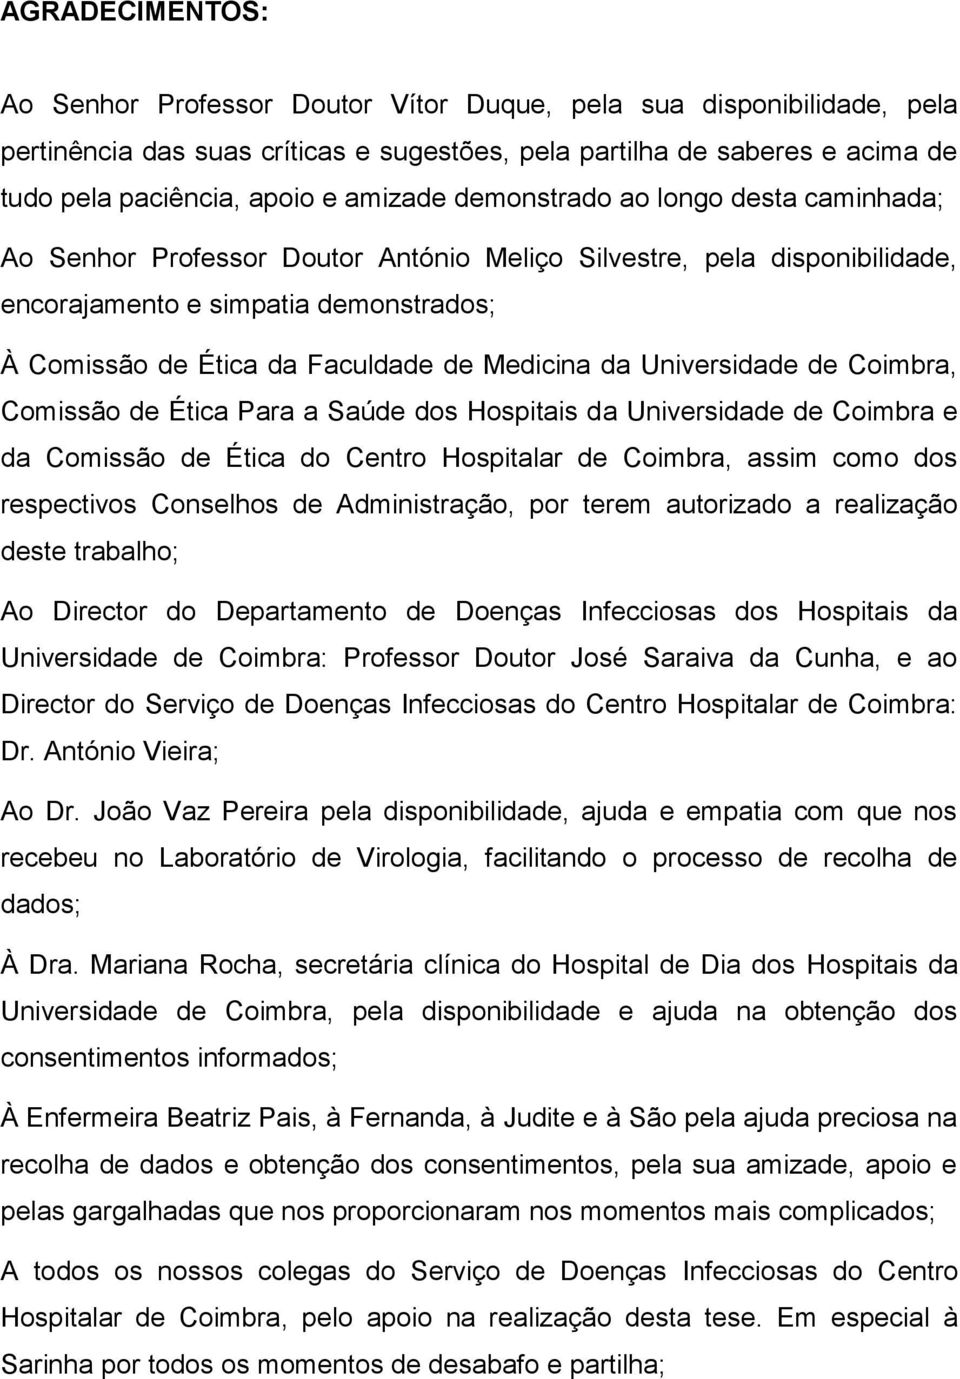 Medicina da Universidade de Coimbra, Comissão de Ética Para a Saúde dos Hospitais da Universidade de Coimbra e da Comissão de Ética do Centro Hospitalar de Coimbra, assim como dos respectivos